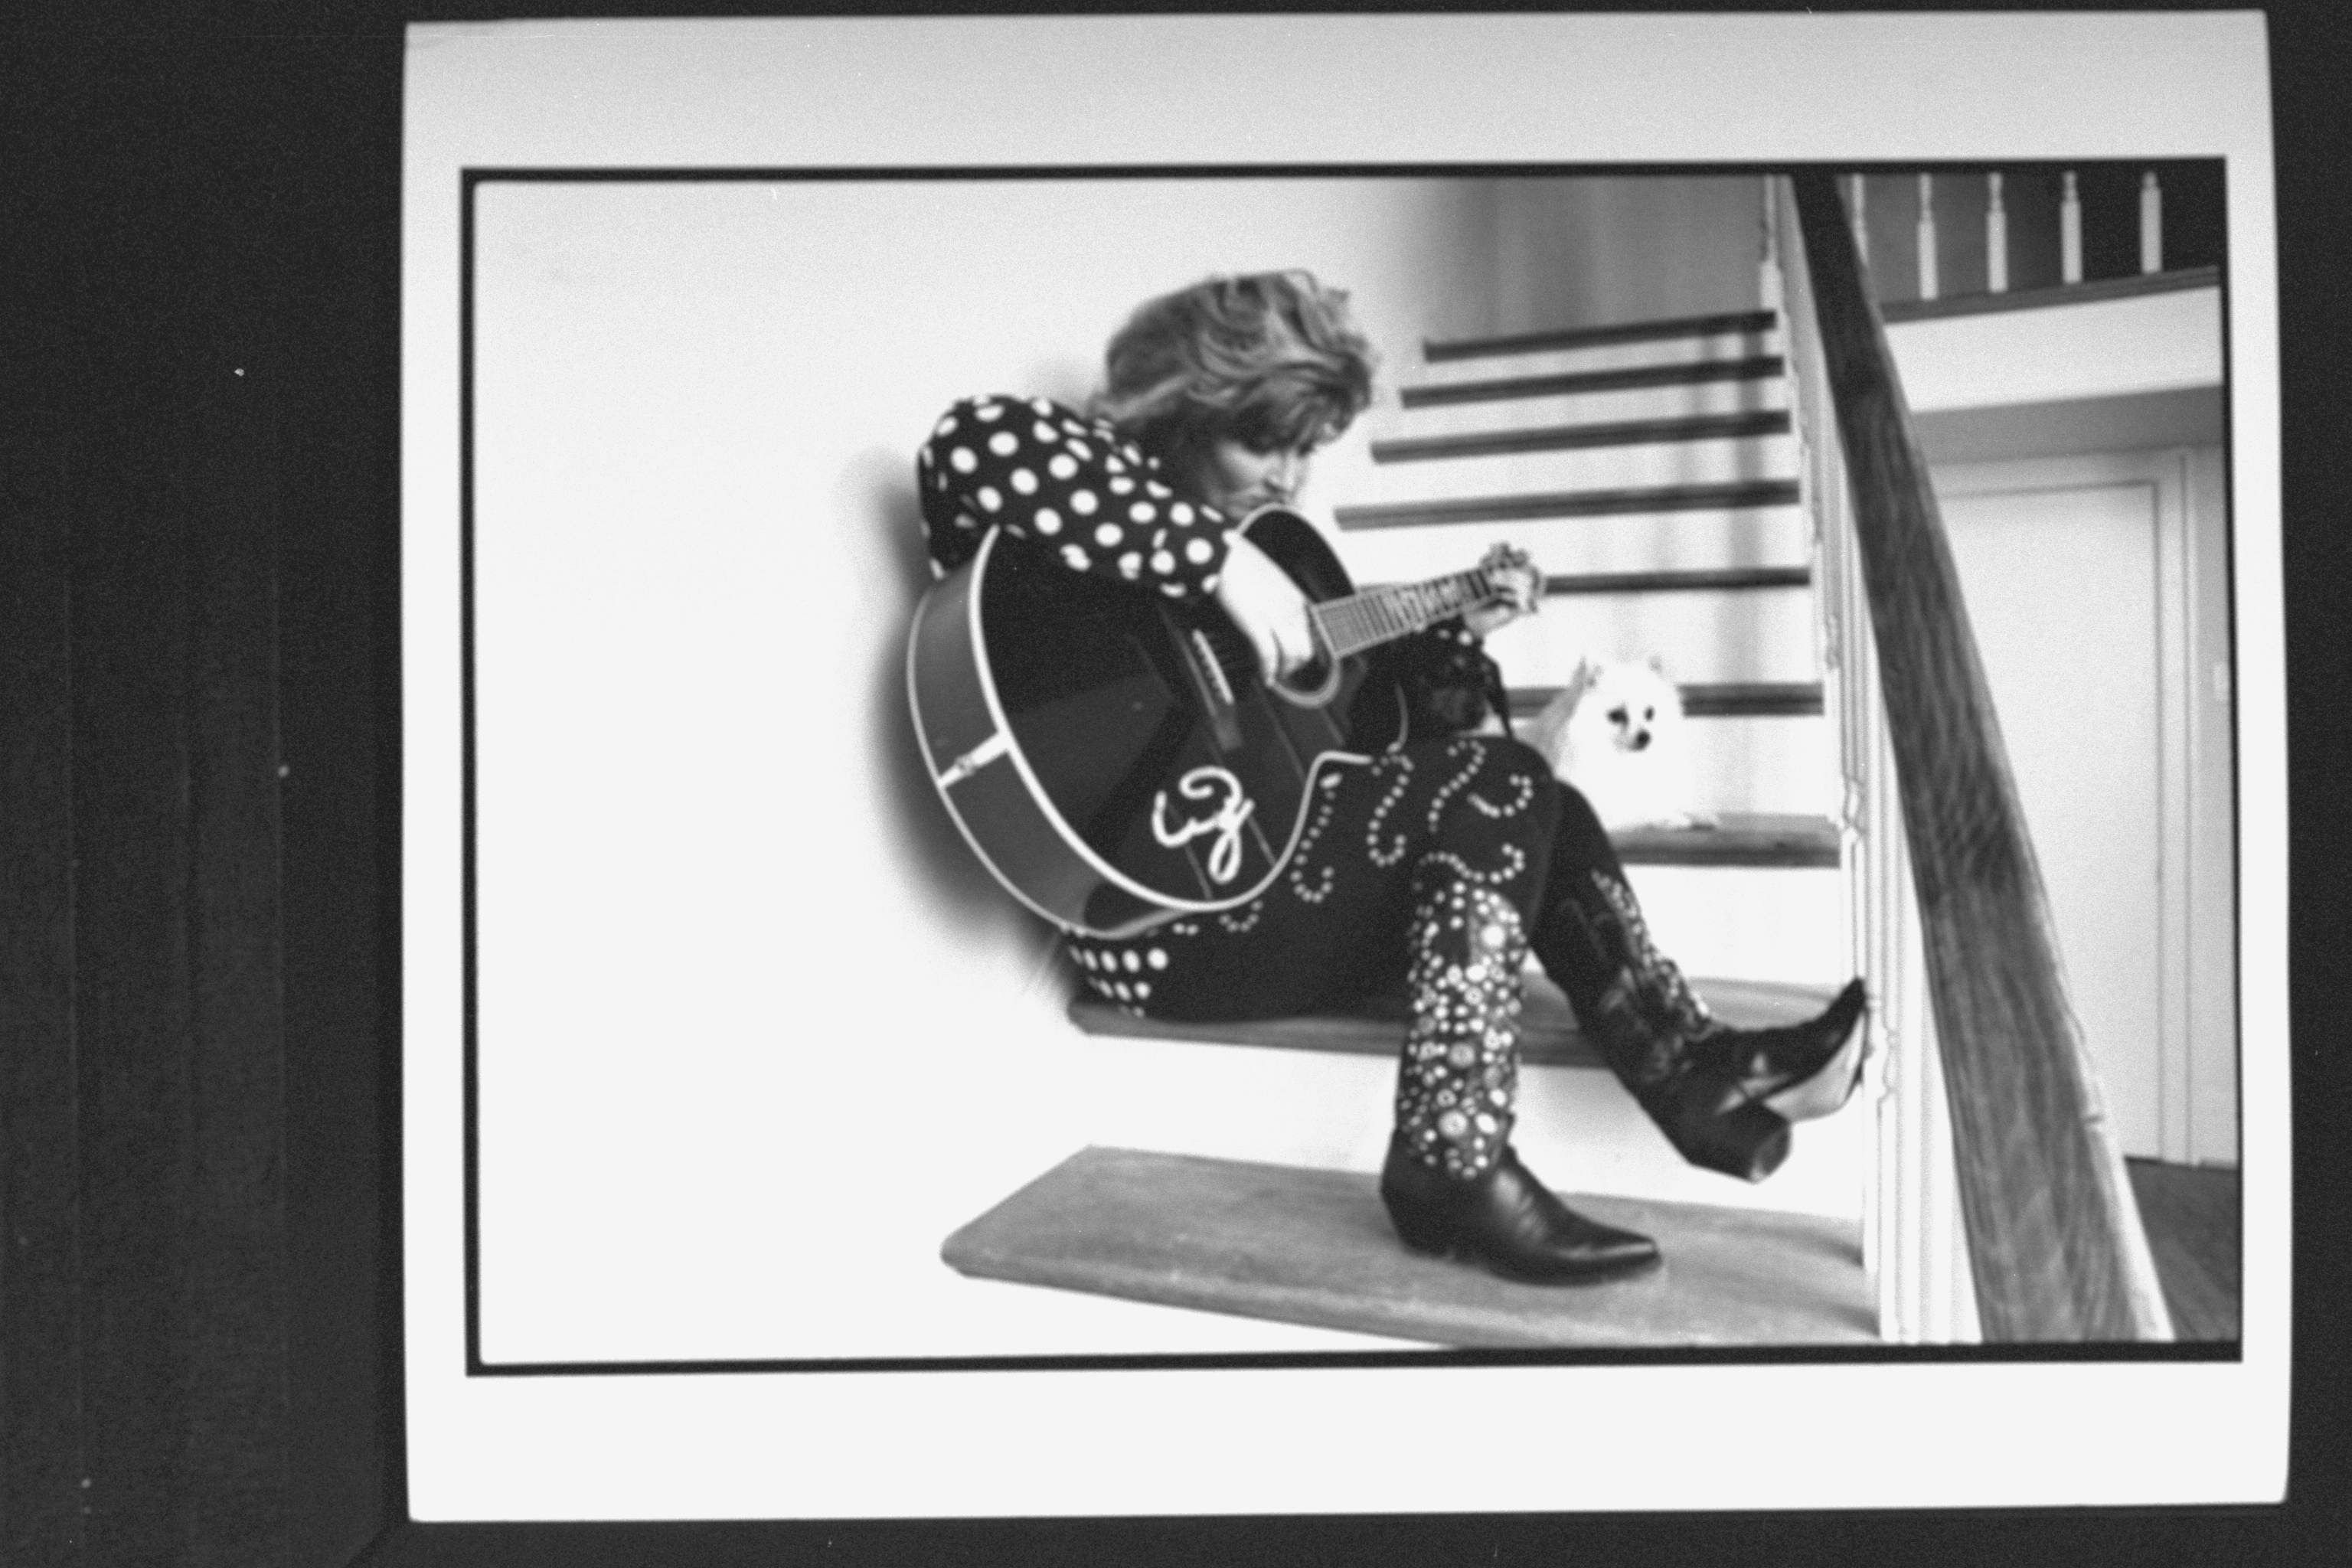 La jeune fille joue de la guitare chez elle le 9 novembre 1990 | Source : Getty Images